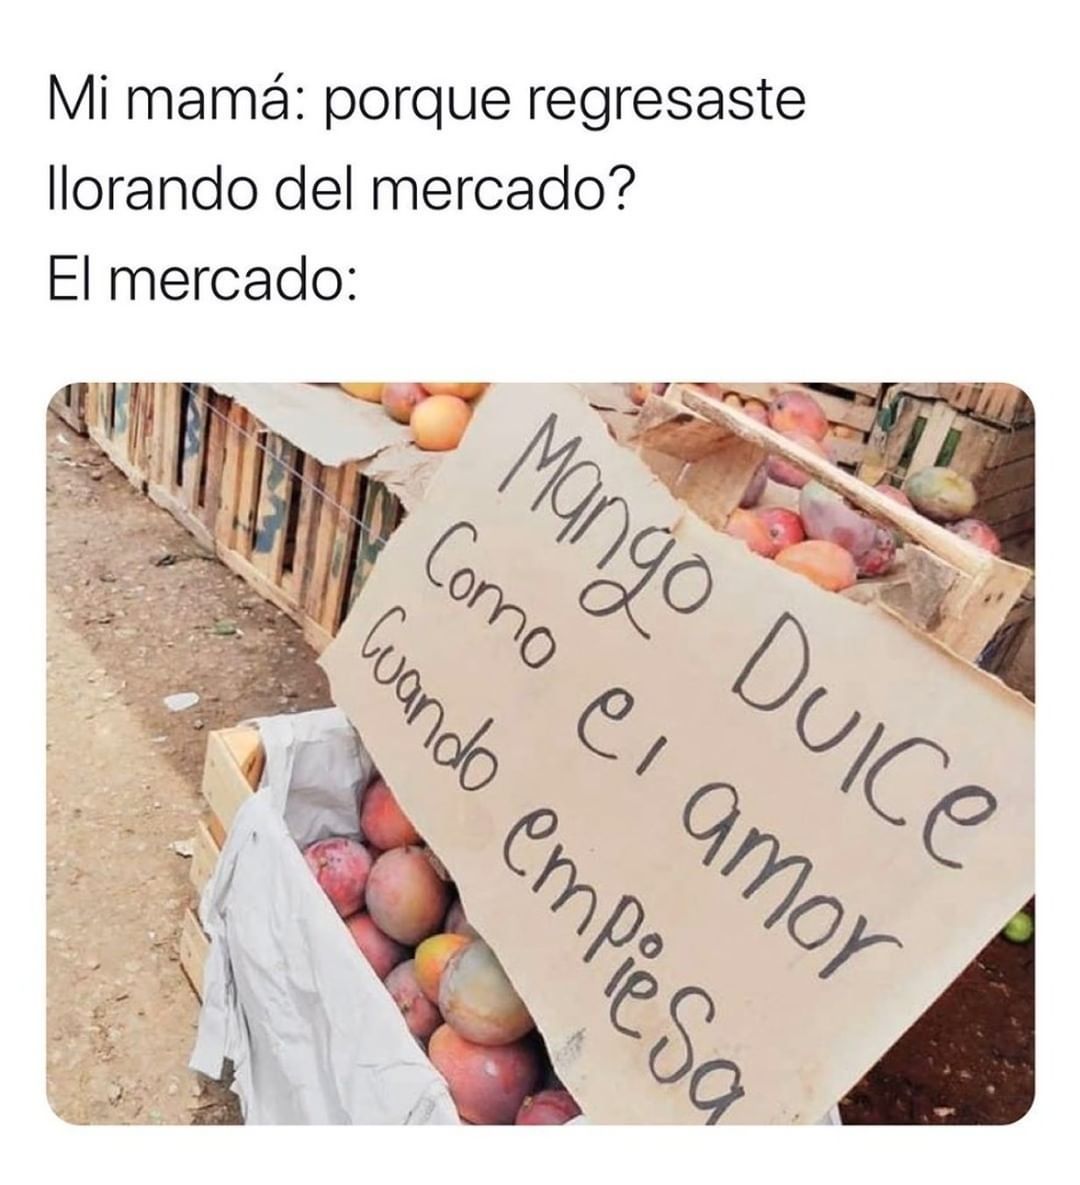 Mi mamá: porque regresaste llorando del mercado?  El mercado:  Mango dulce como el amor cuando empieza.